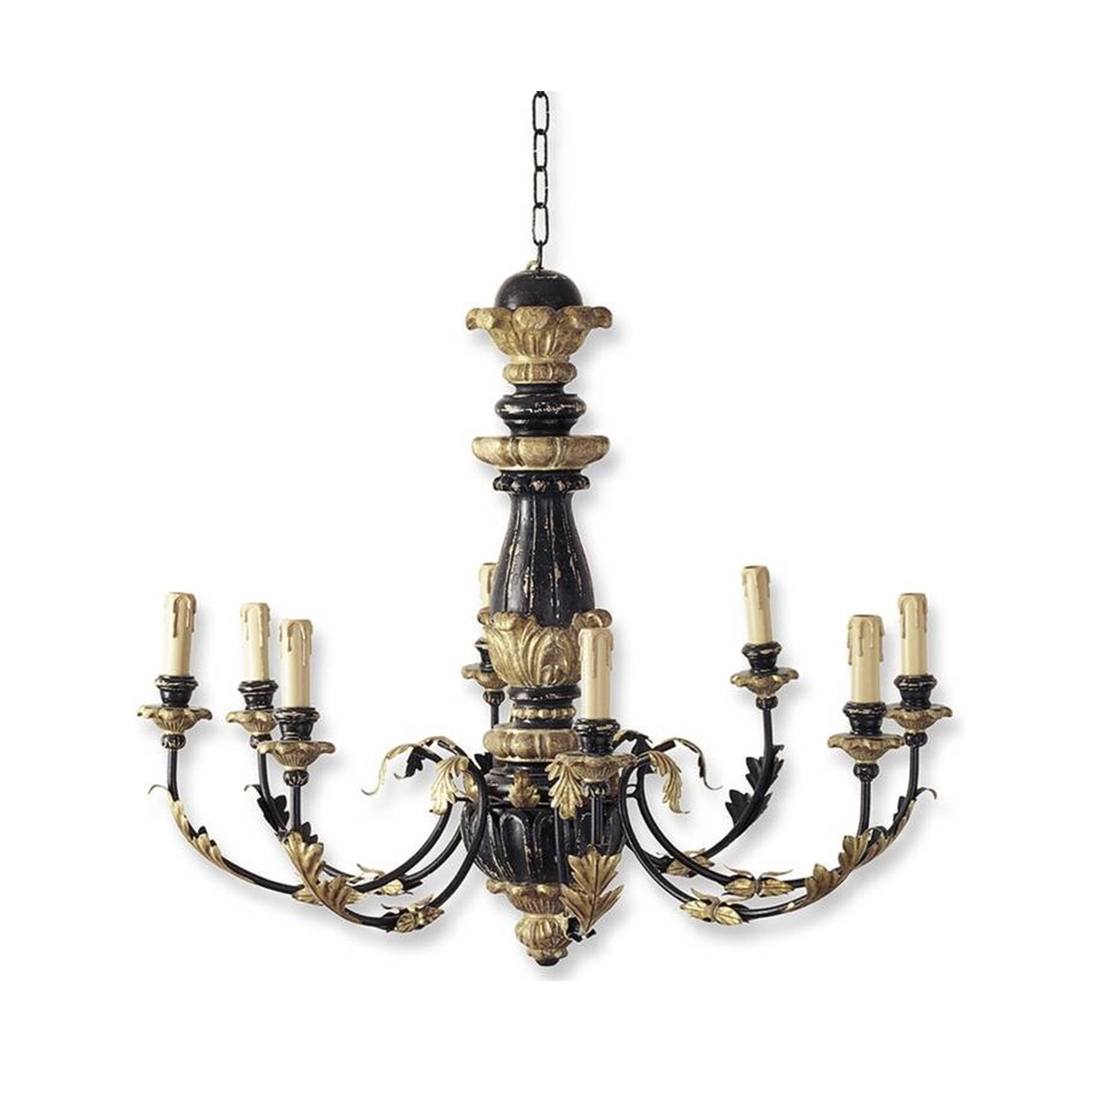 Blenheim chandelier in Black & gold - Beaumont & Fletcher